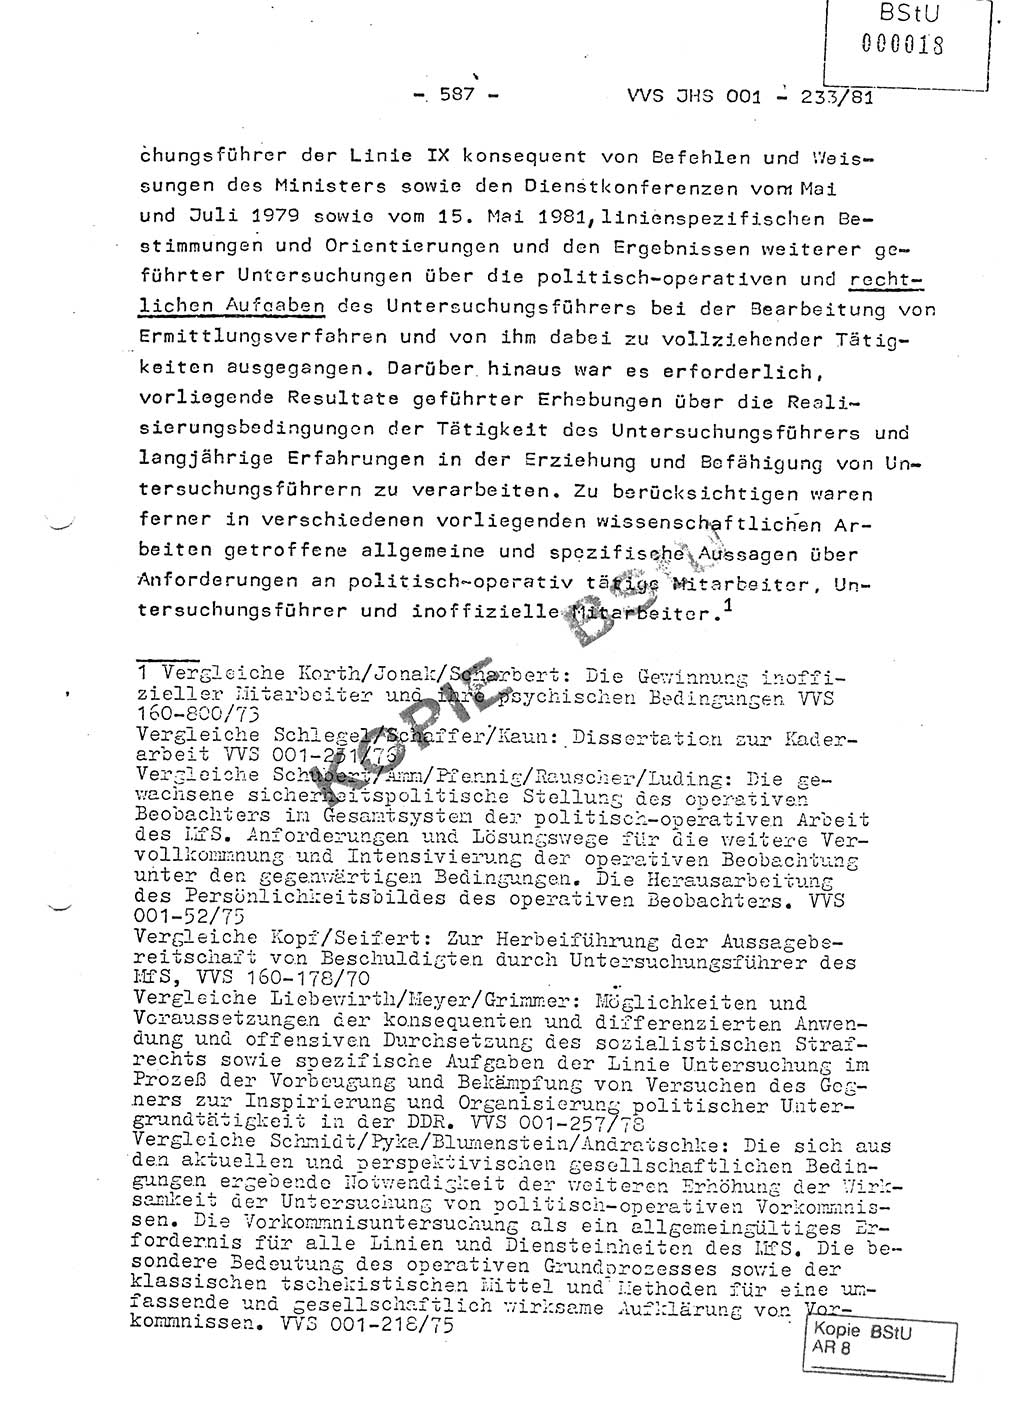 Dissertation Oberstleutnant Horst Zank (JHS), Oberstleutnant Dr. Karl-Heinz Knoblauch (JHS), Oberstleutnant Gustav-Adolf Kowalewski (HA Ⅸ), Oberstleutnant Wolfgang Plötner (HA Ⅸ), Ministerium für Staatssicherheit (MfS) [Deutsche Demokratische Republik (DDR)], Juristische Hochschule (JHS), Vertrauliche Verschlußsache (VVS) o001-233/81, Potsdam 1981, Blatt 587 (Diss. MfS DDR JHS VVS o001-233/81 1981, Bl. 587)